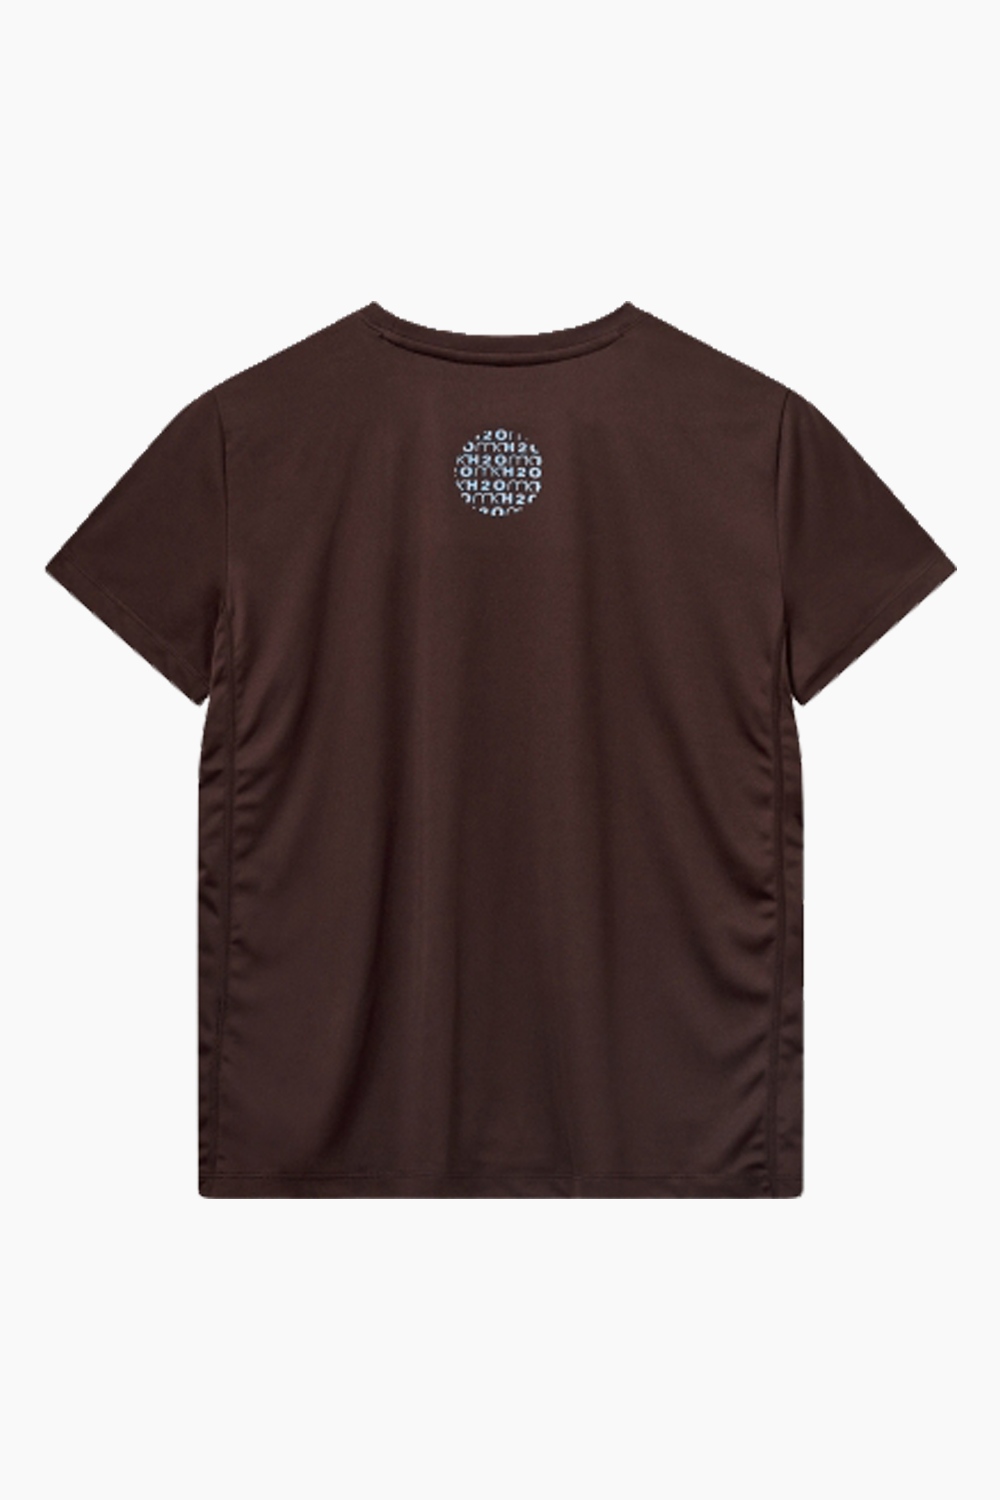 MK x H2O T-Shirt - Dark Brown - H2O